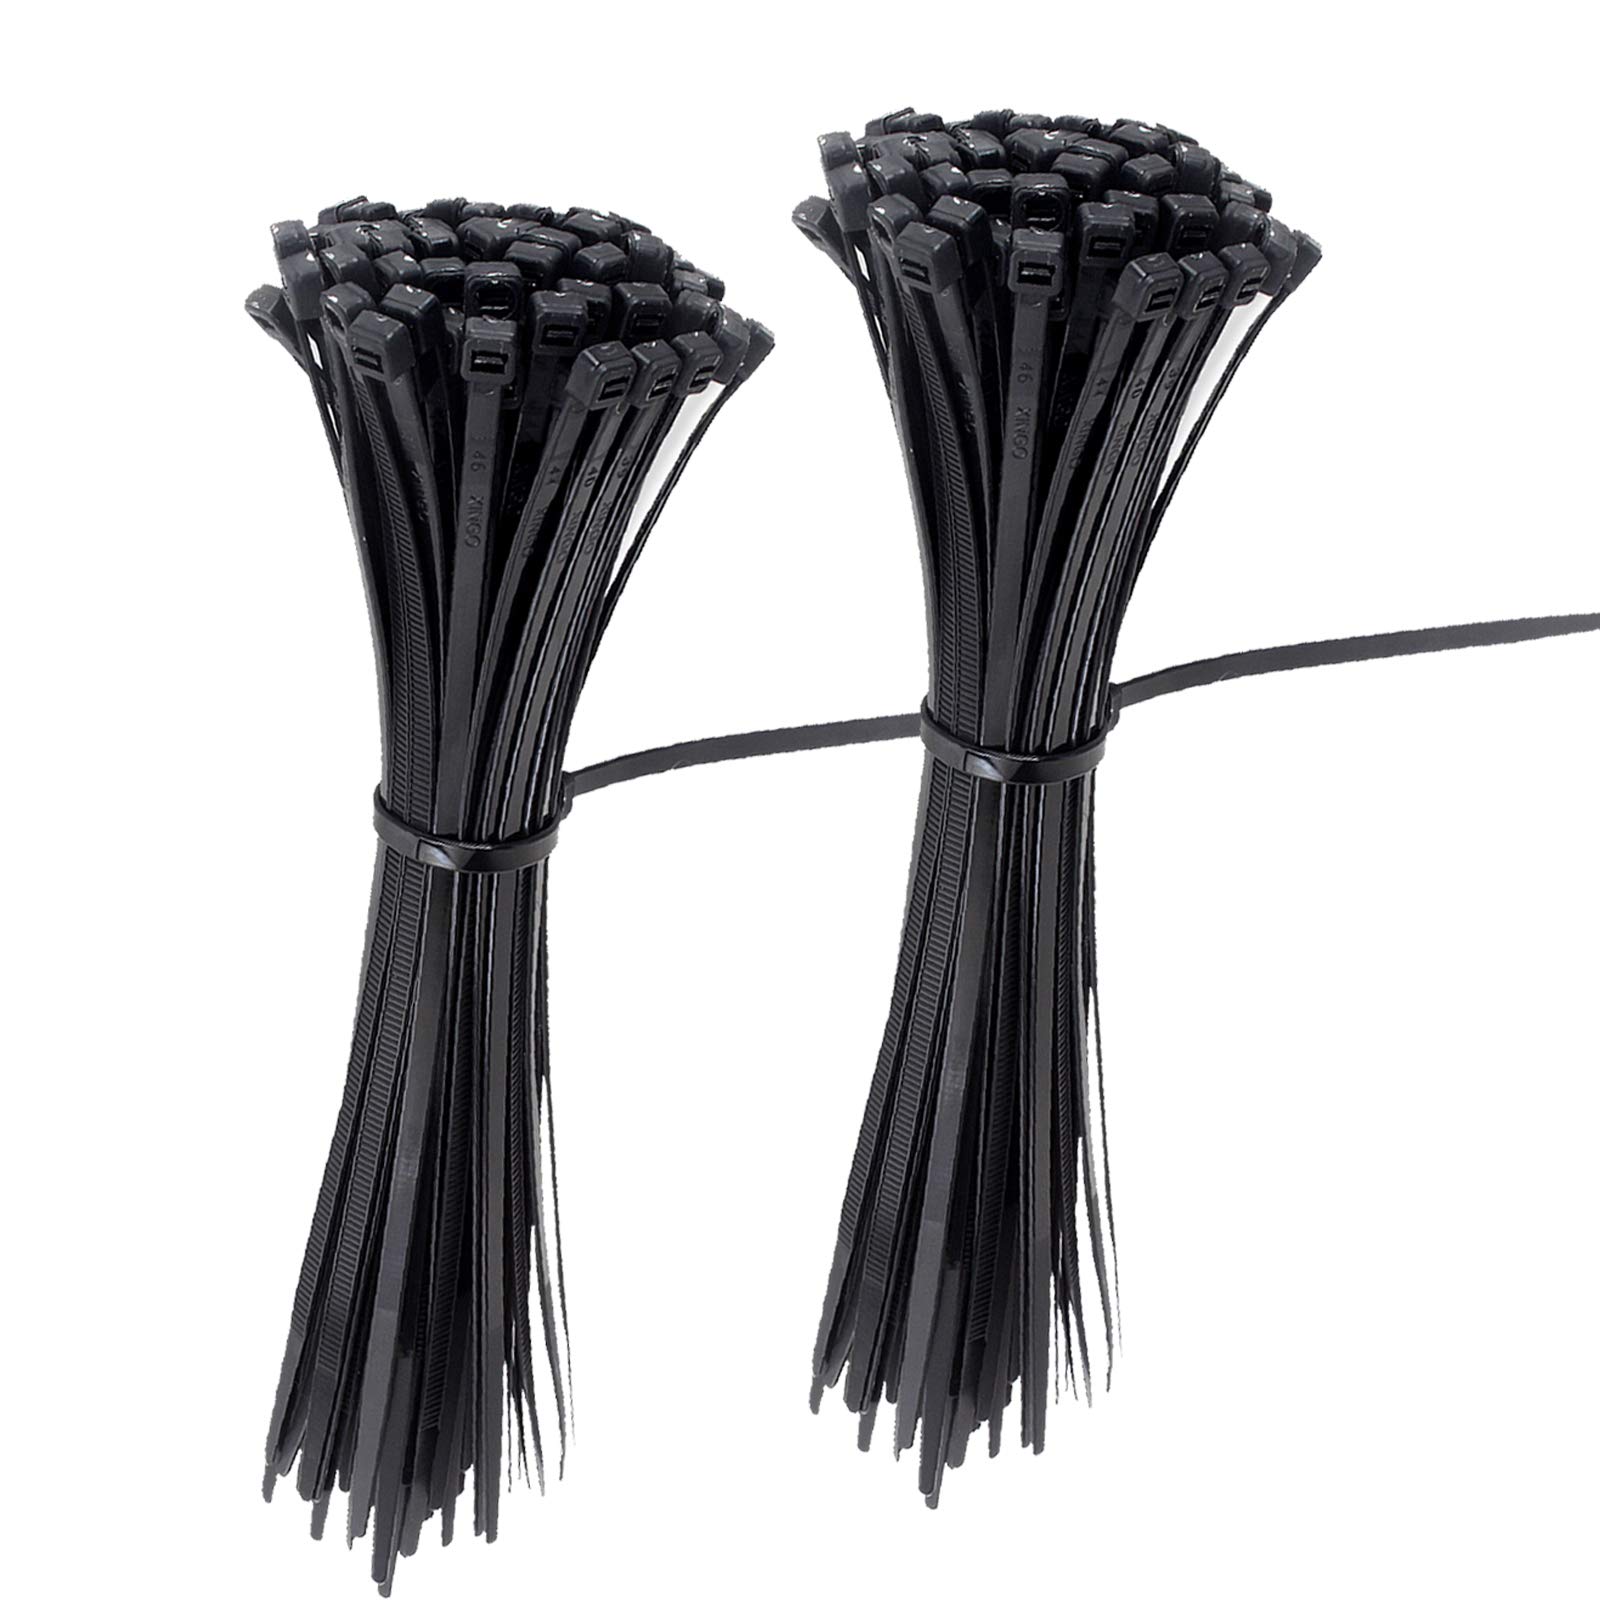 Zip & Cable Ties